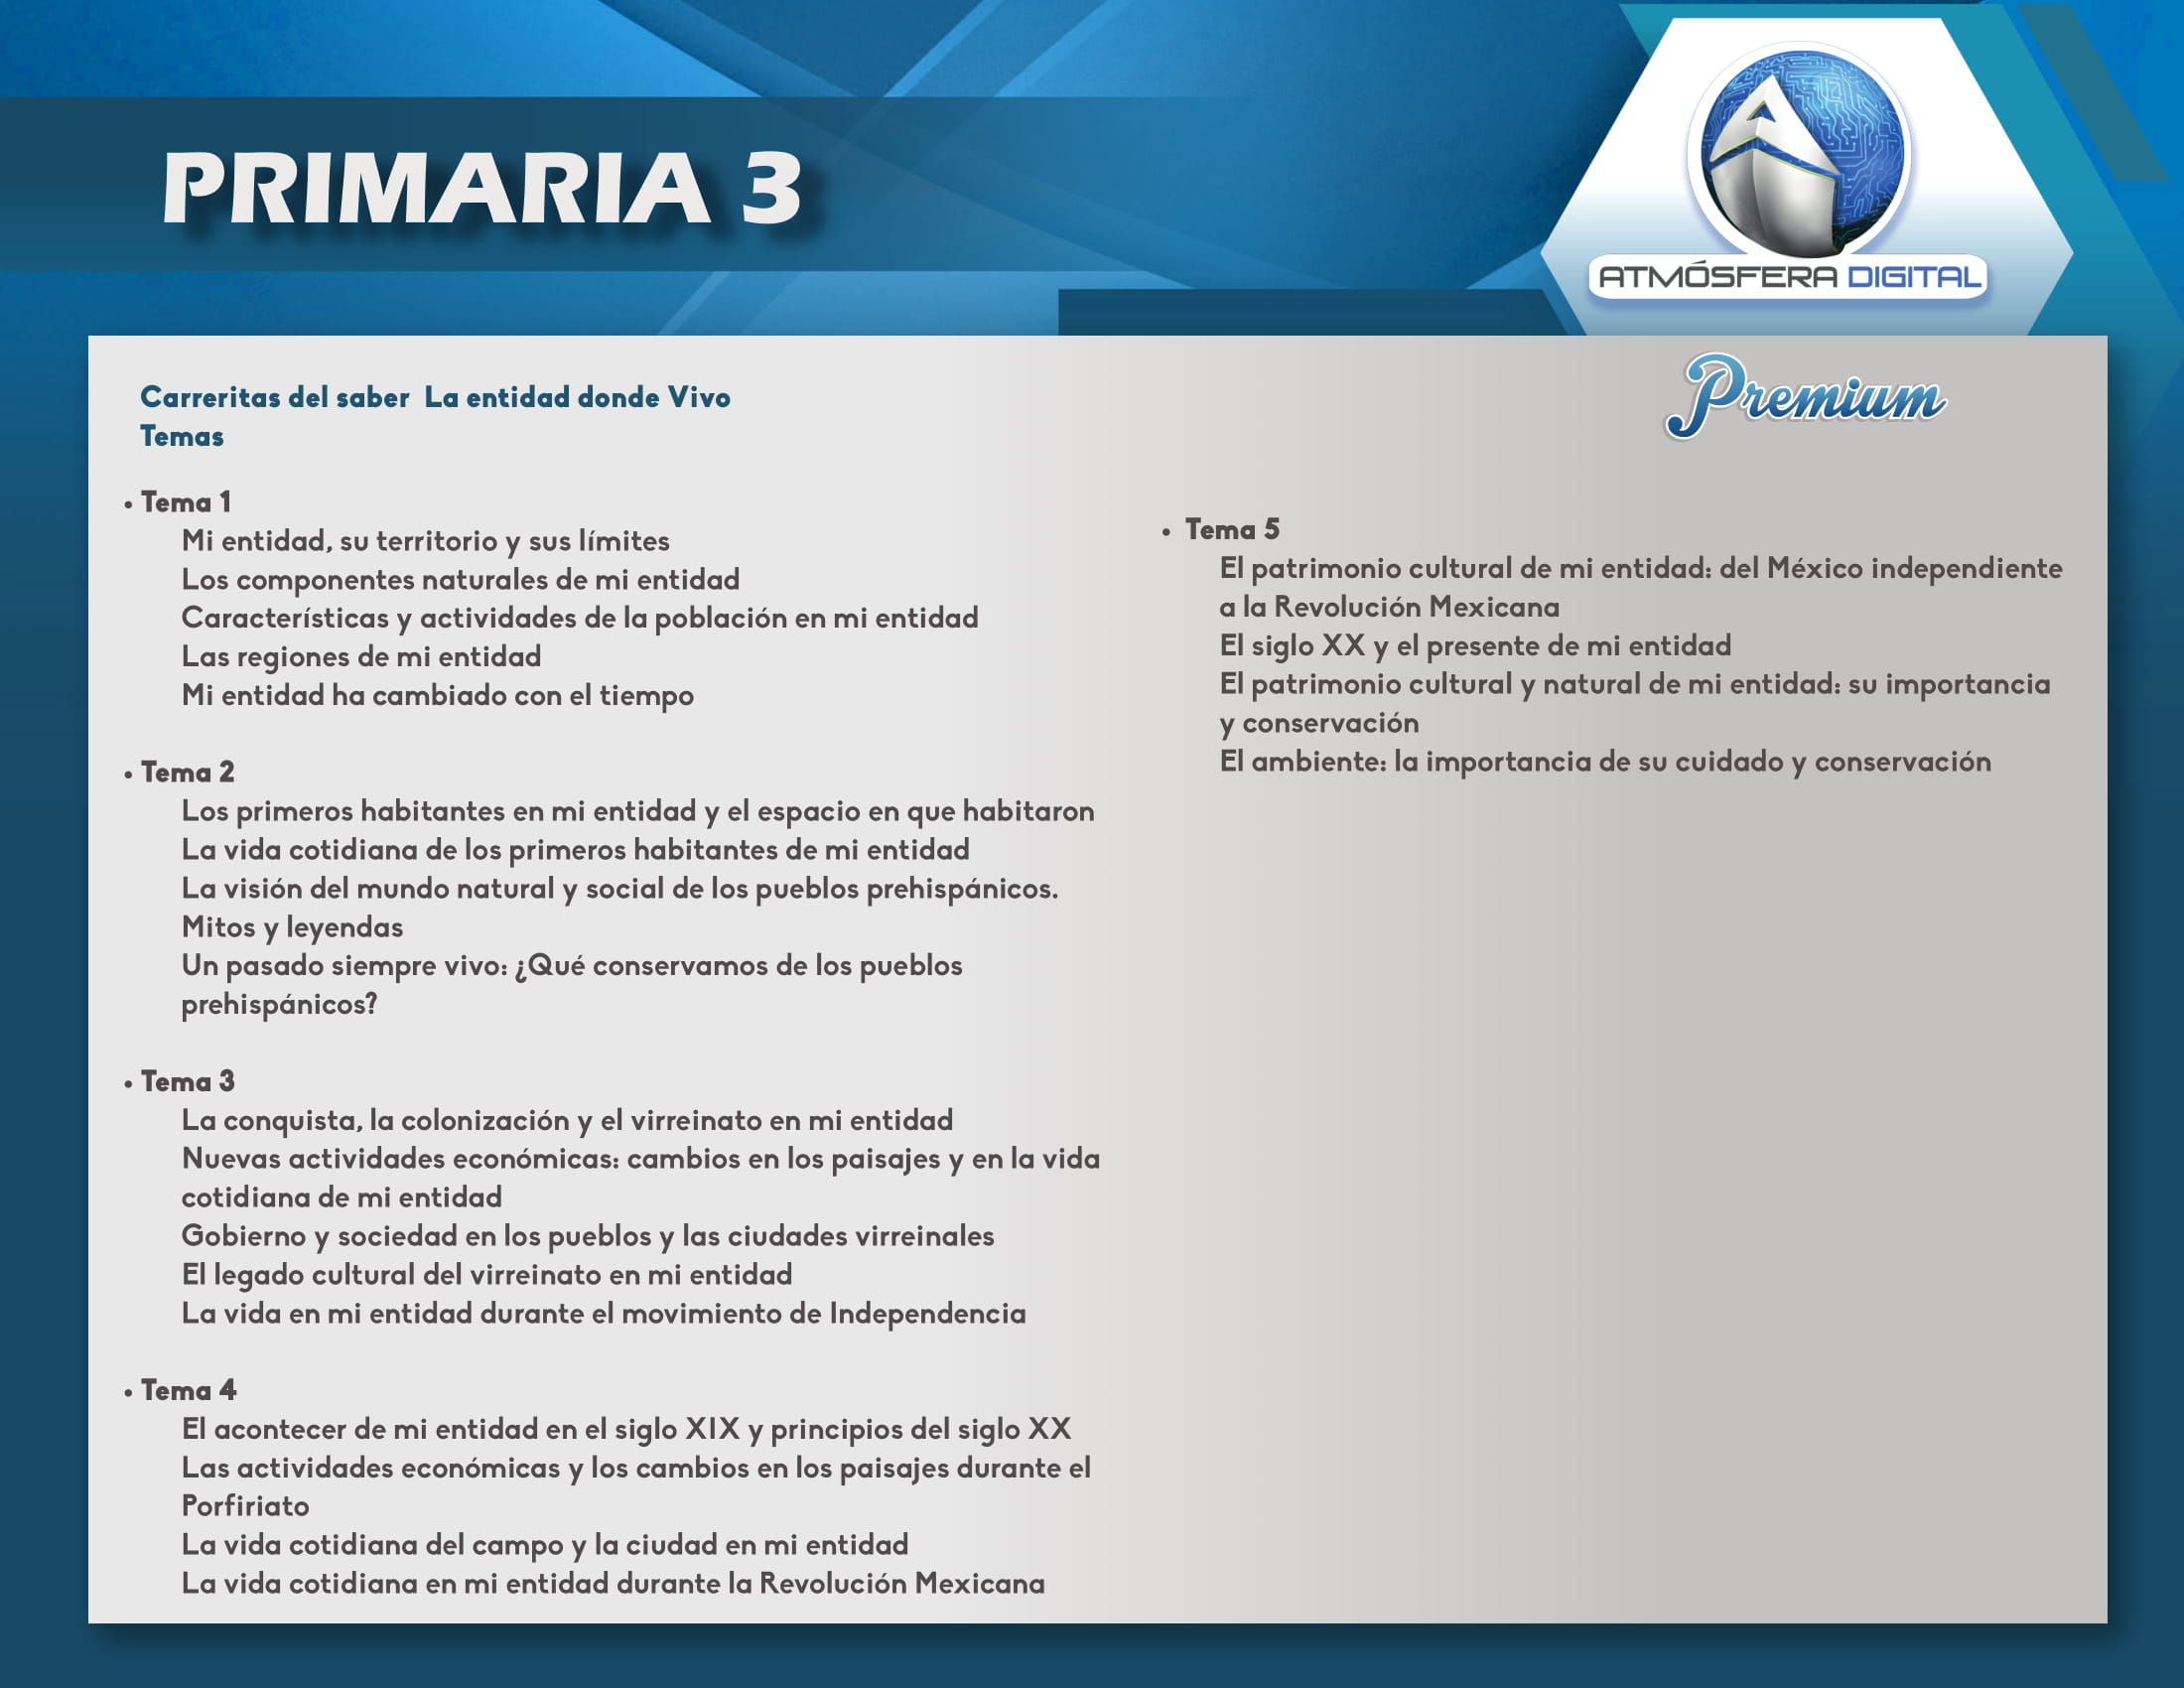 Temario Atmósfera Digital Premium – Primaria